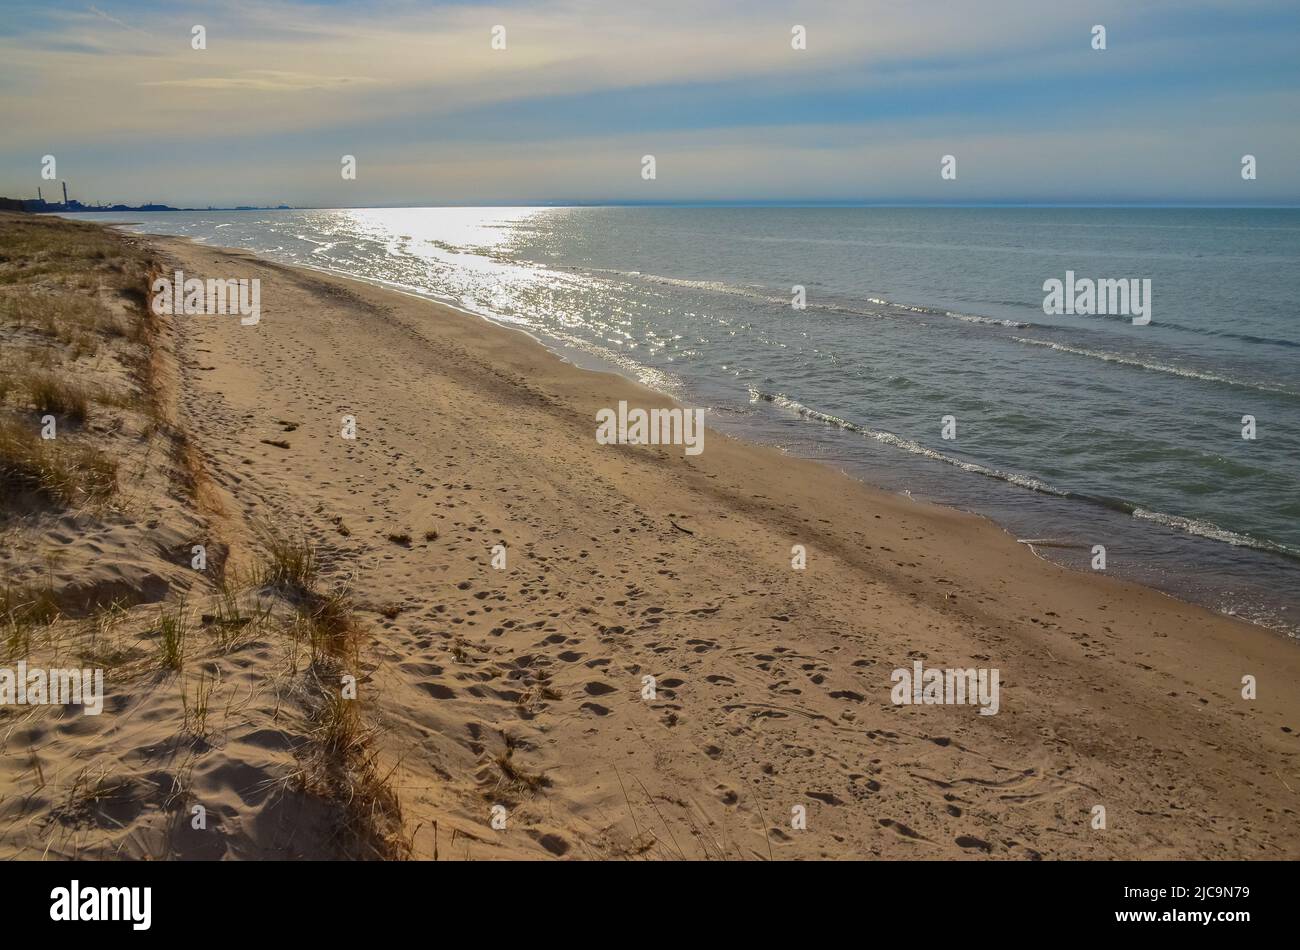 Sanddünen am Ufer eines großen Sees, Spiegelung der Sonne im Wasser. Indiana Dunes National Lakeshore, USA Stockfoto